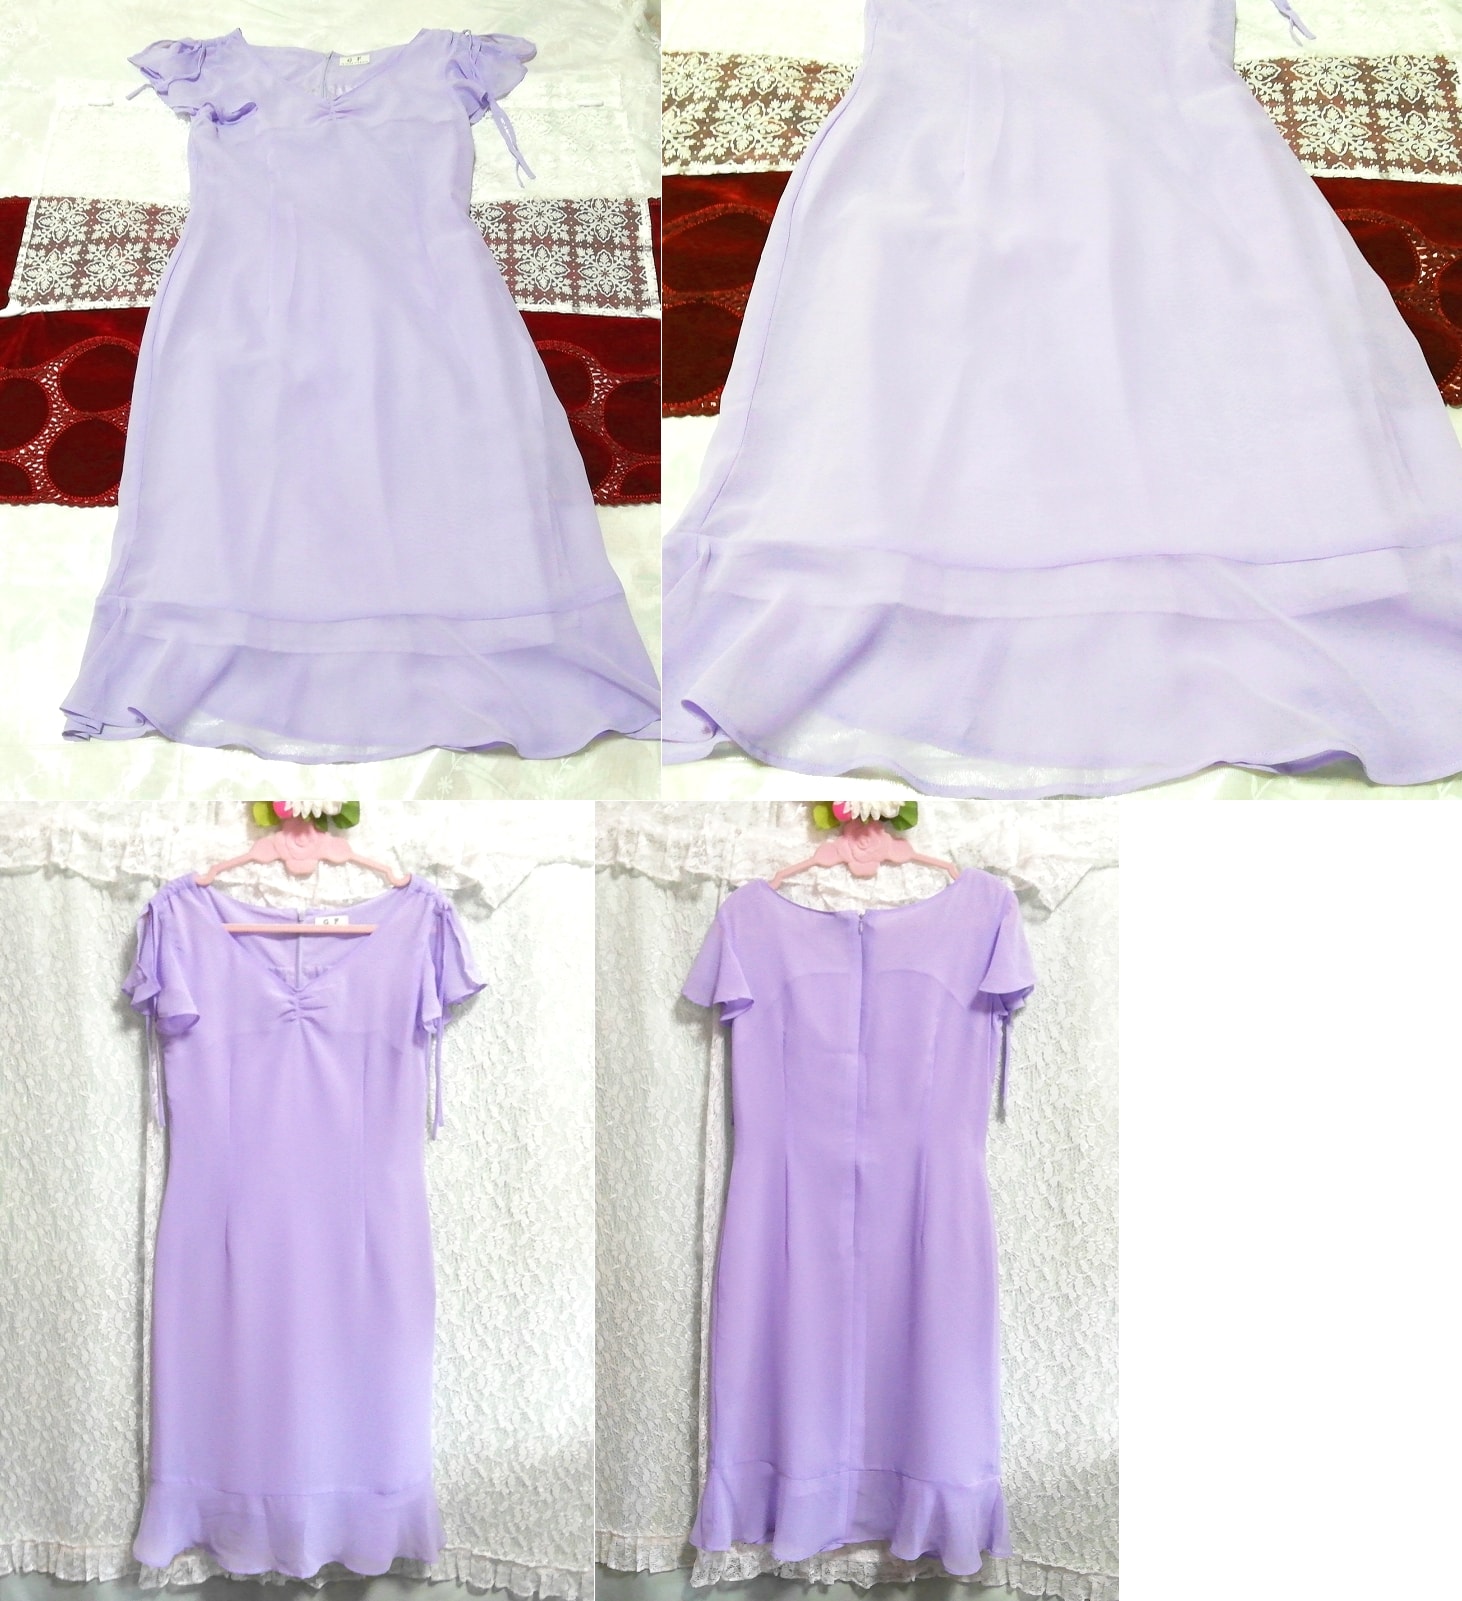 紫色雪纺睡衣短袖连衣裙, 时尚, 女士时装, 睡衣